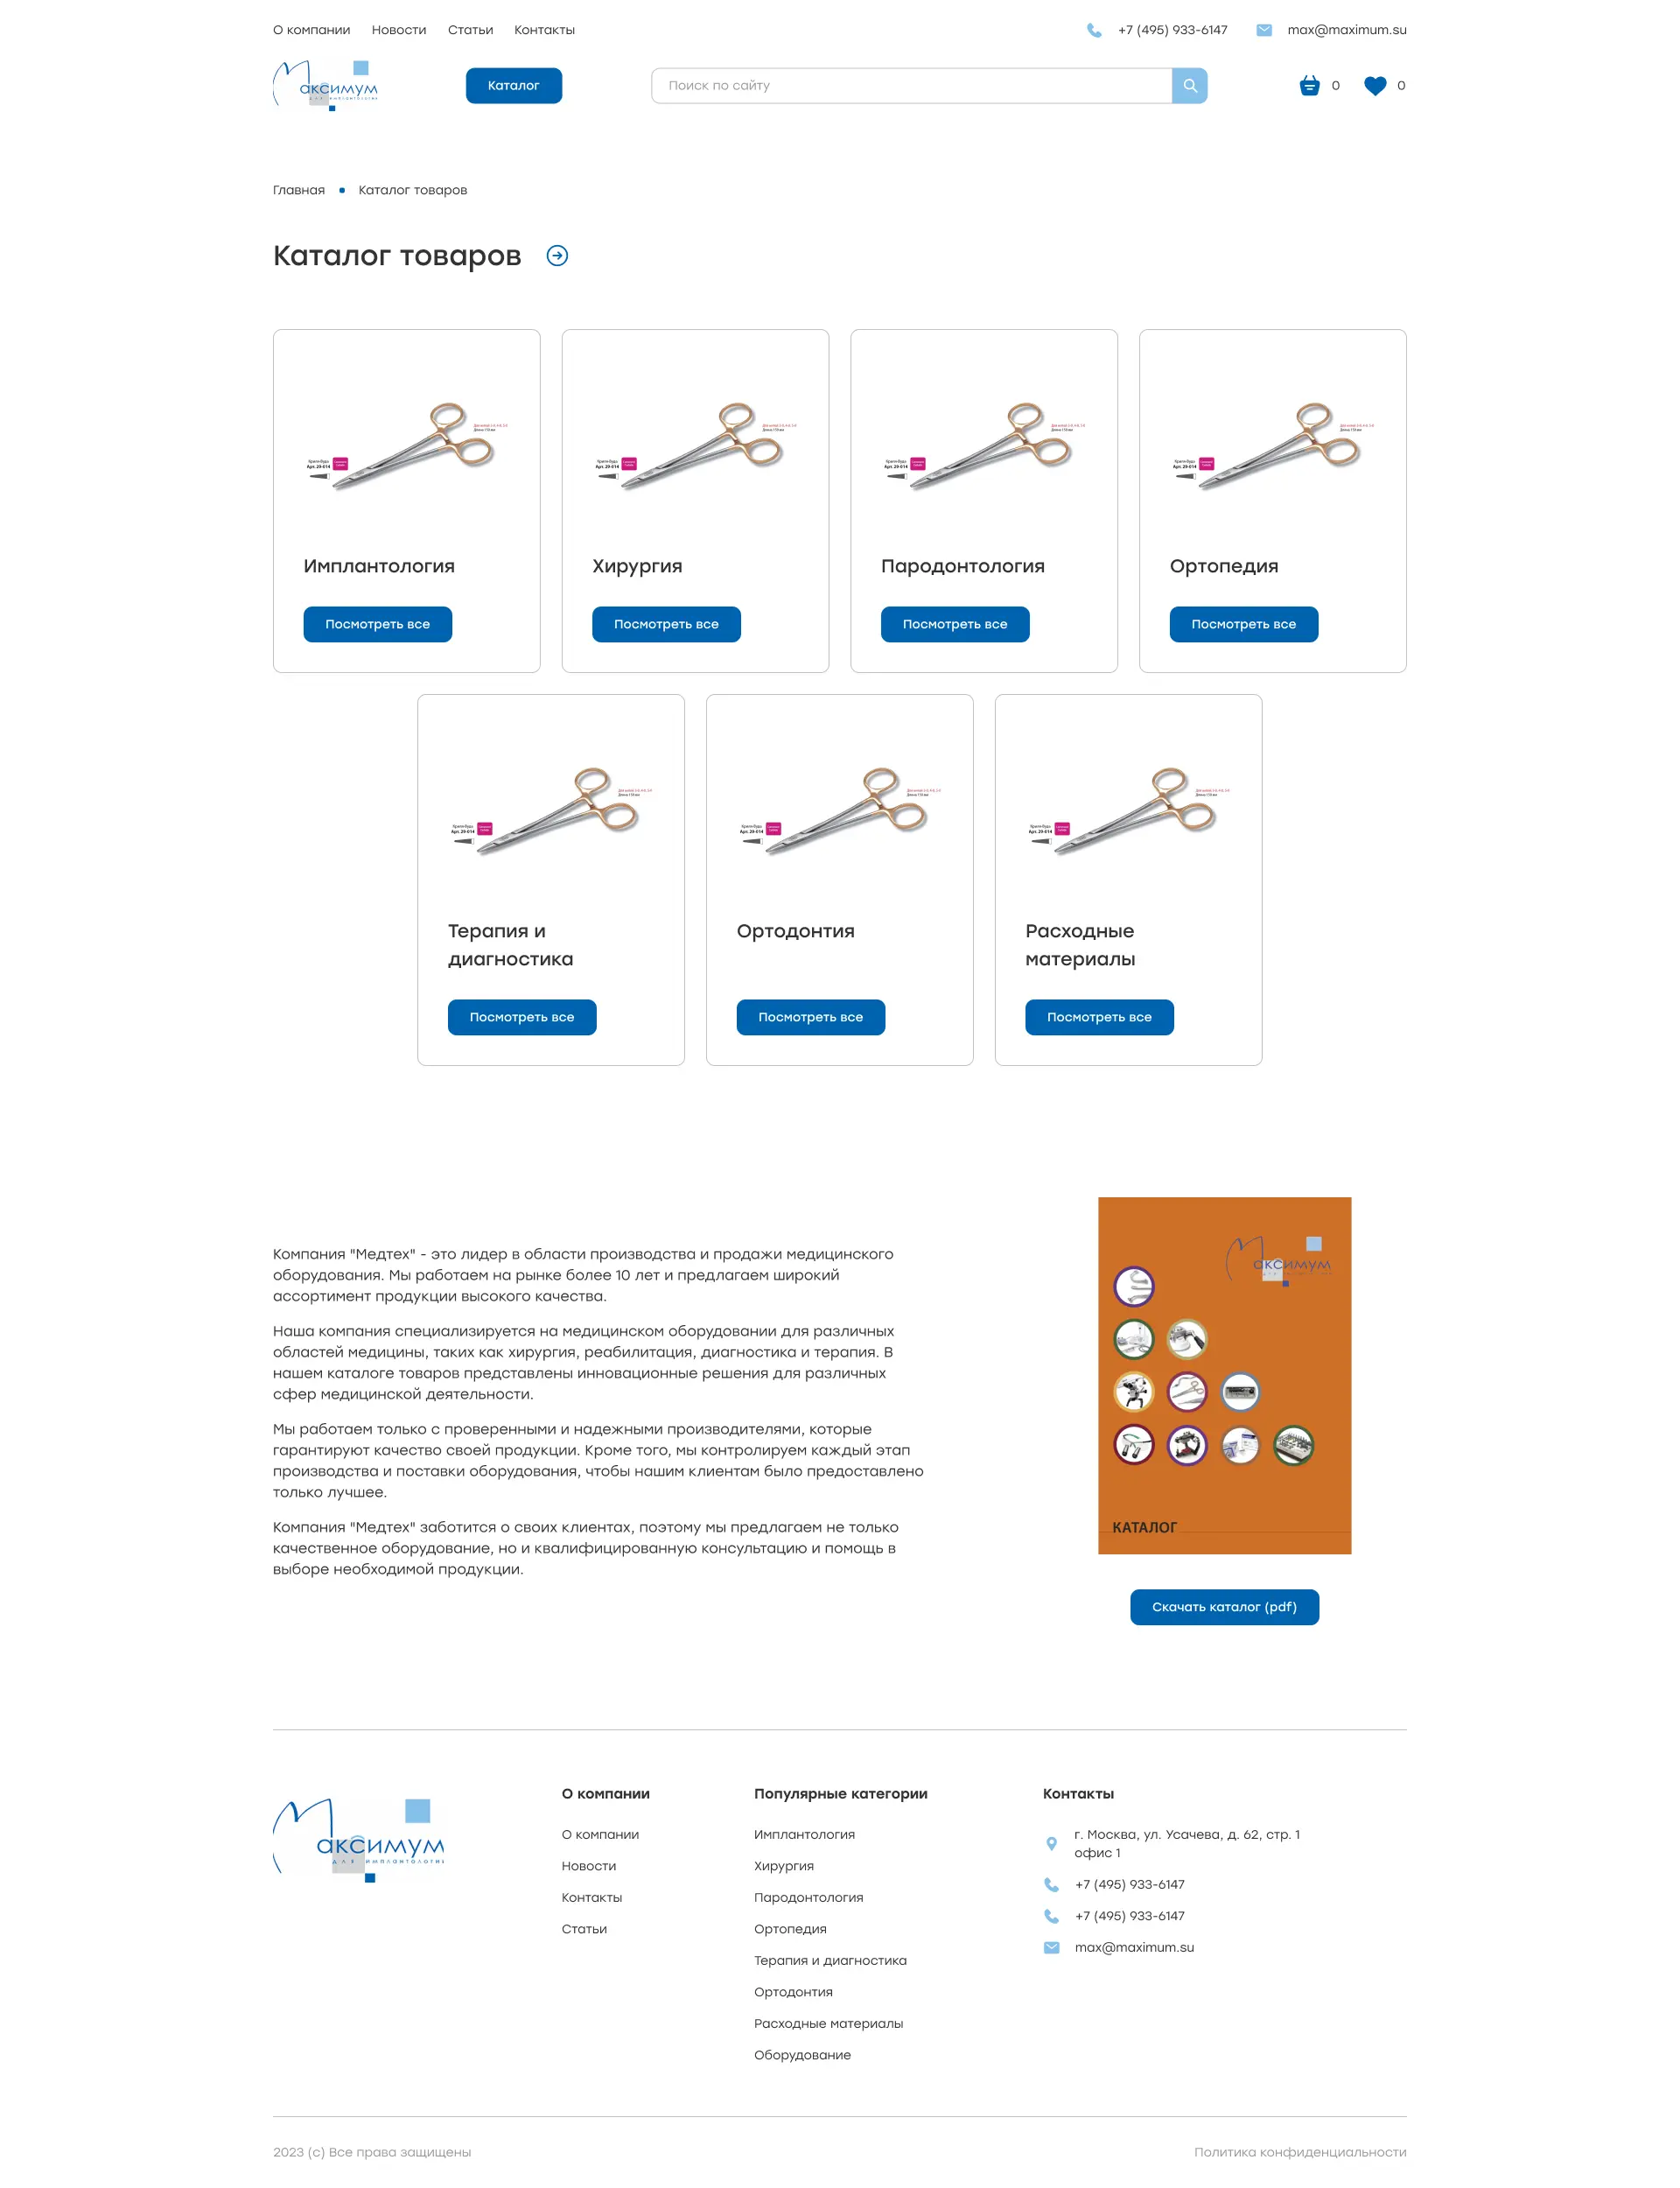 Figma шаблон, Figma templates, шаблона для сайта магазин медицинского оборудования, страница каталога